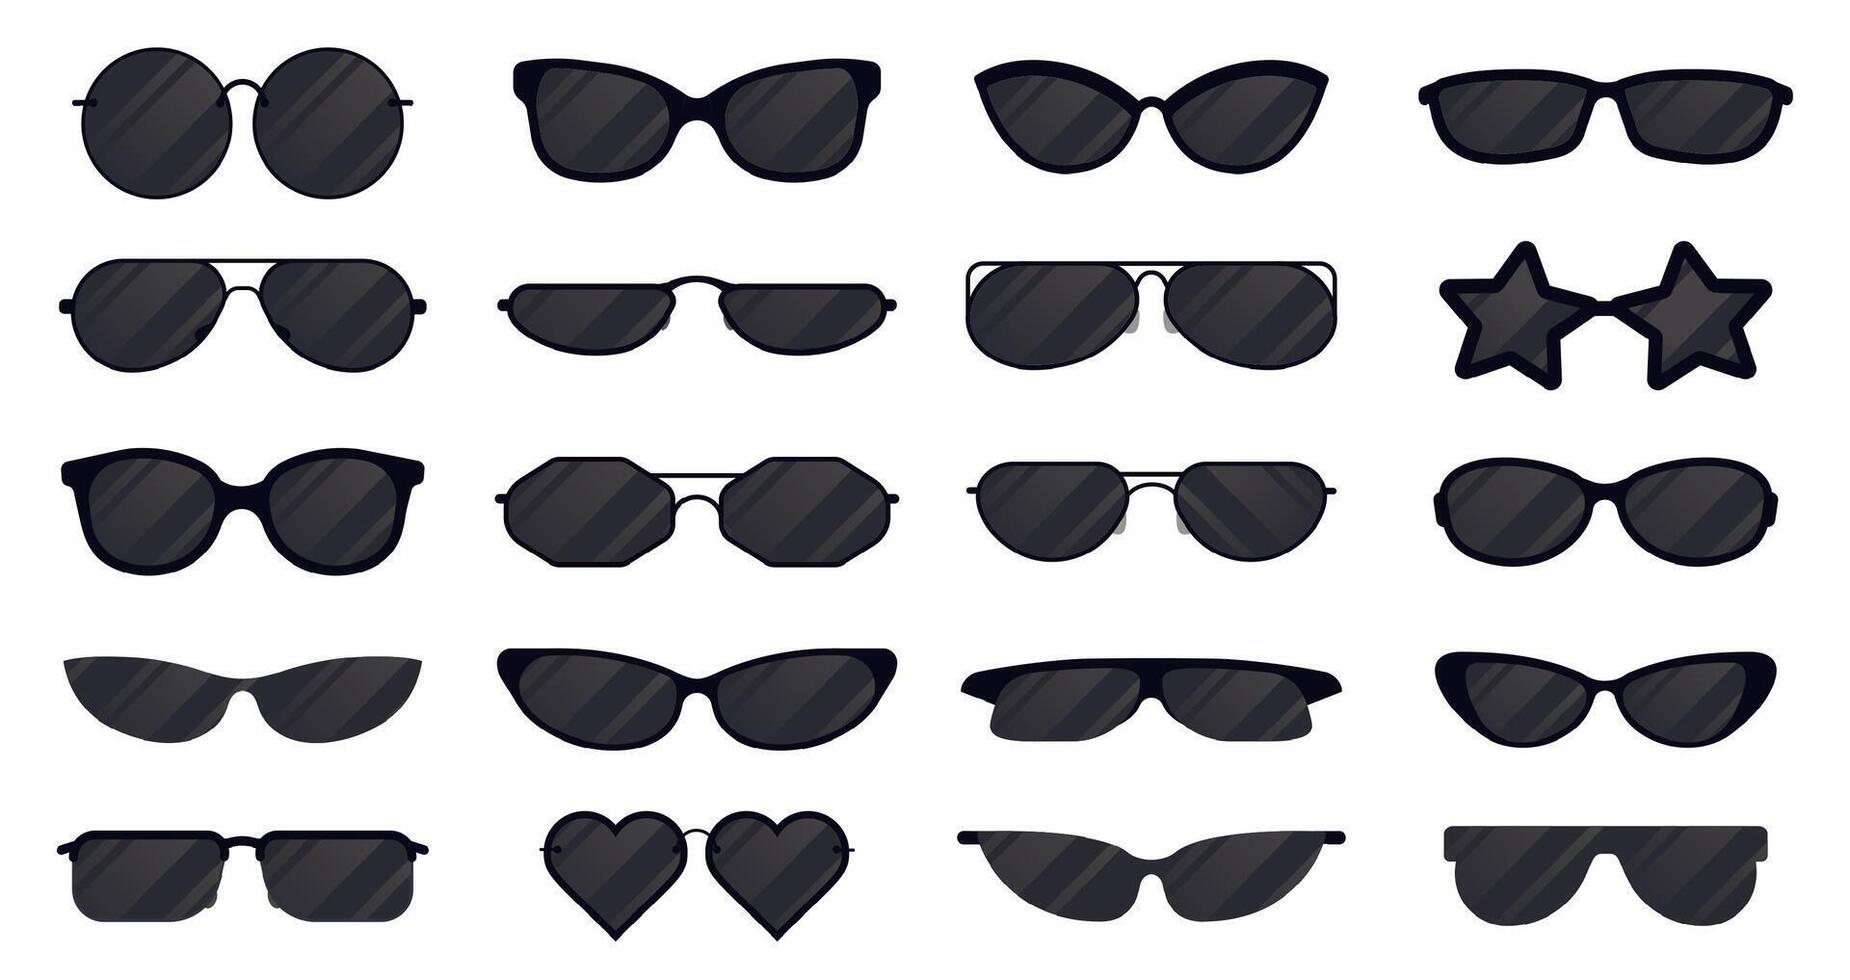 Sonnenbrille Brillen. Brille Silhouette, Sonne elegant Brillen, schwarz Plastik Brille. Sonne Linse Brillen Vektor Illustration Symbole einstellen